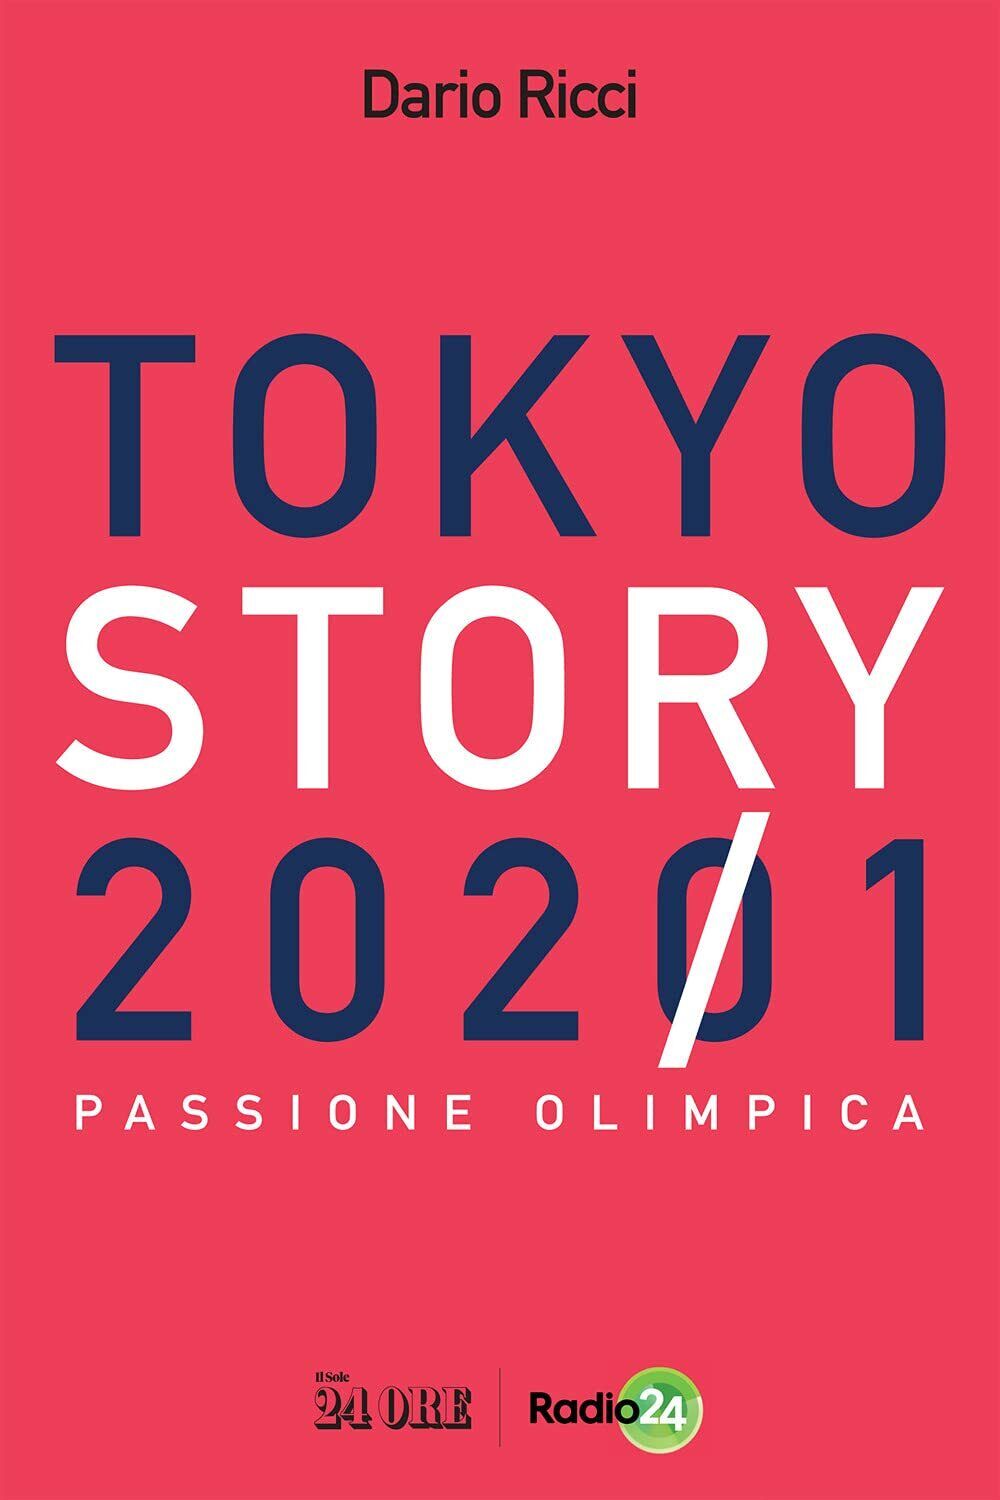 Tokyo story 2021 - Dario Ricci - Il sole 24 ore, 2021 libro usato